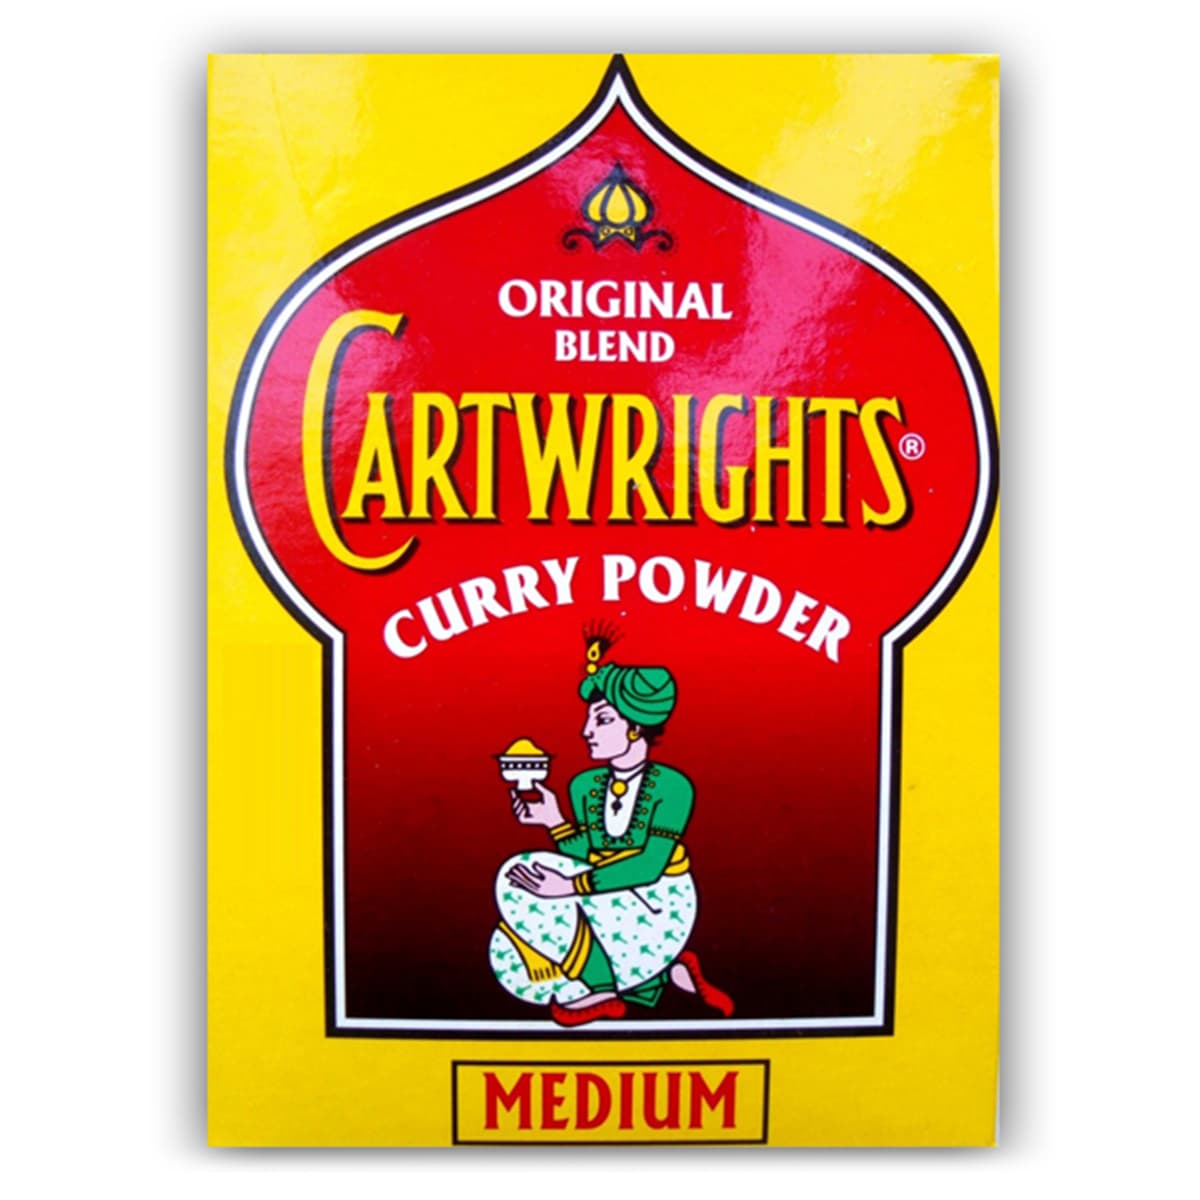 Buy Cartwrights Curry Powder Medium - 100 gm